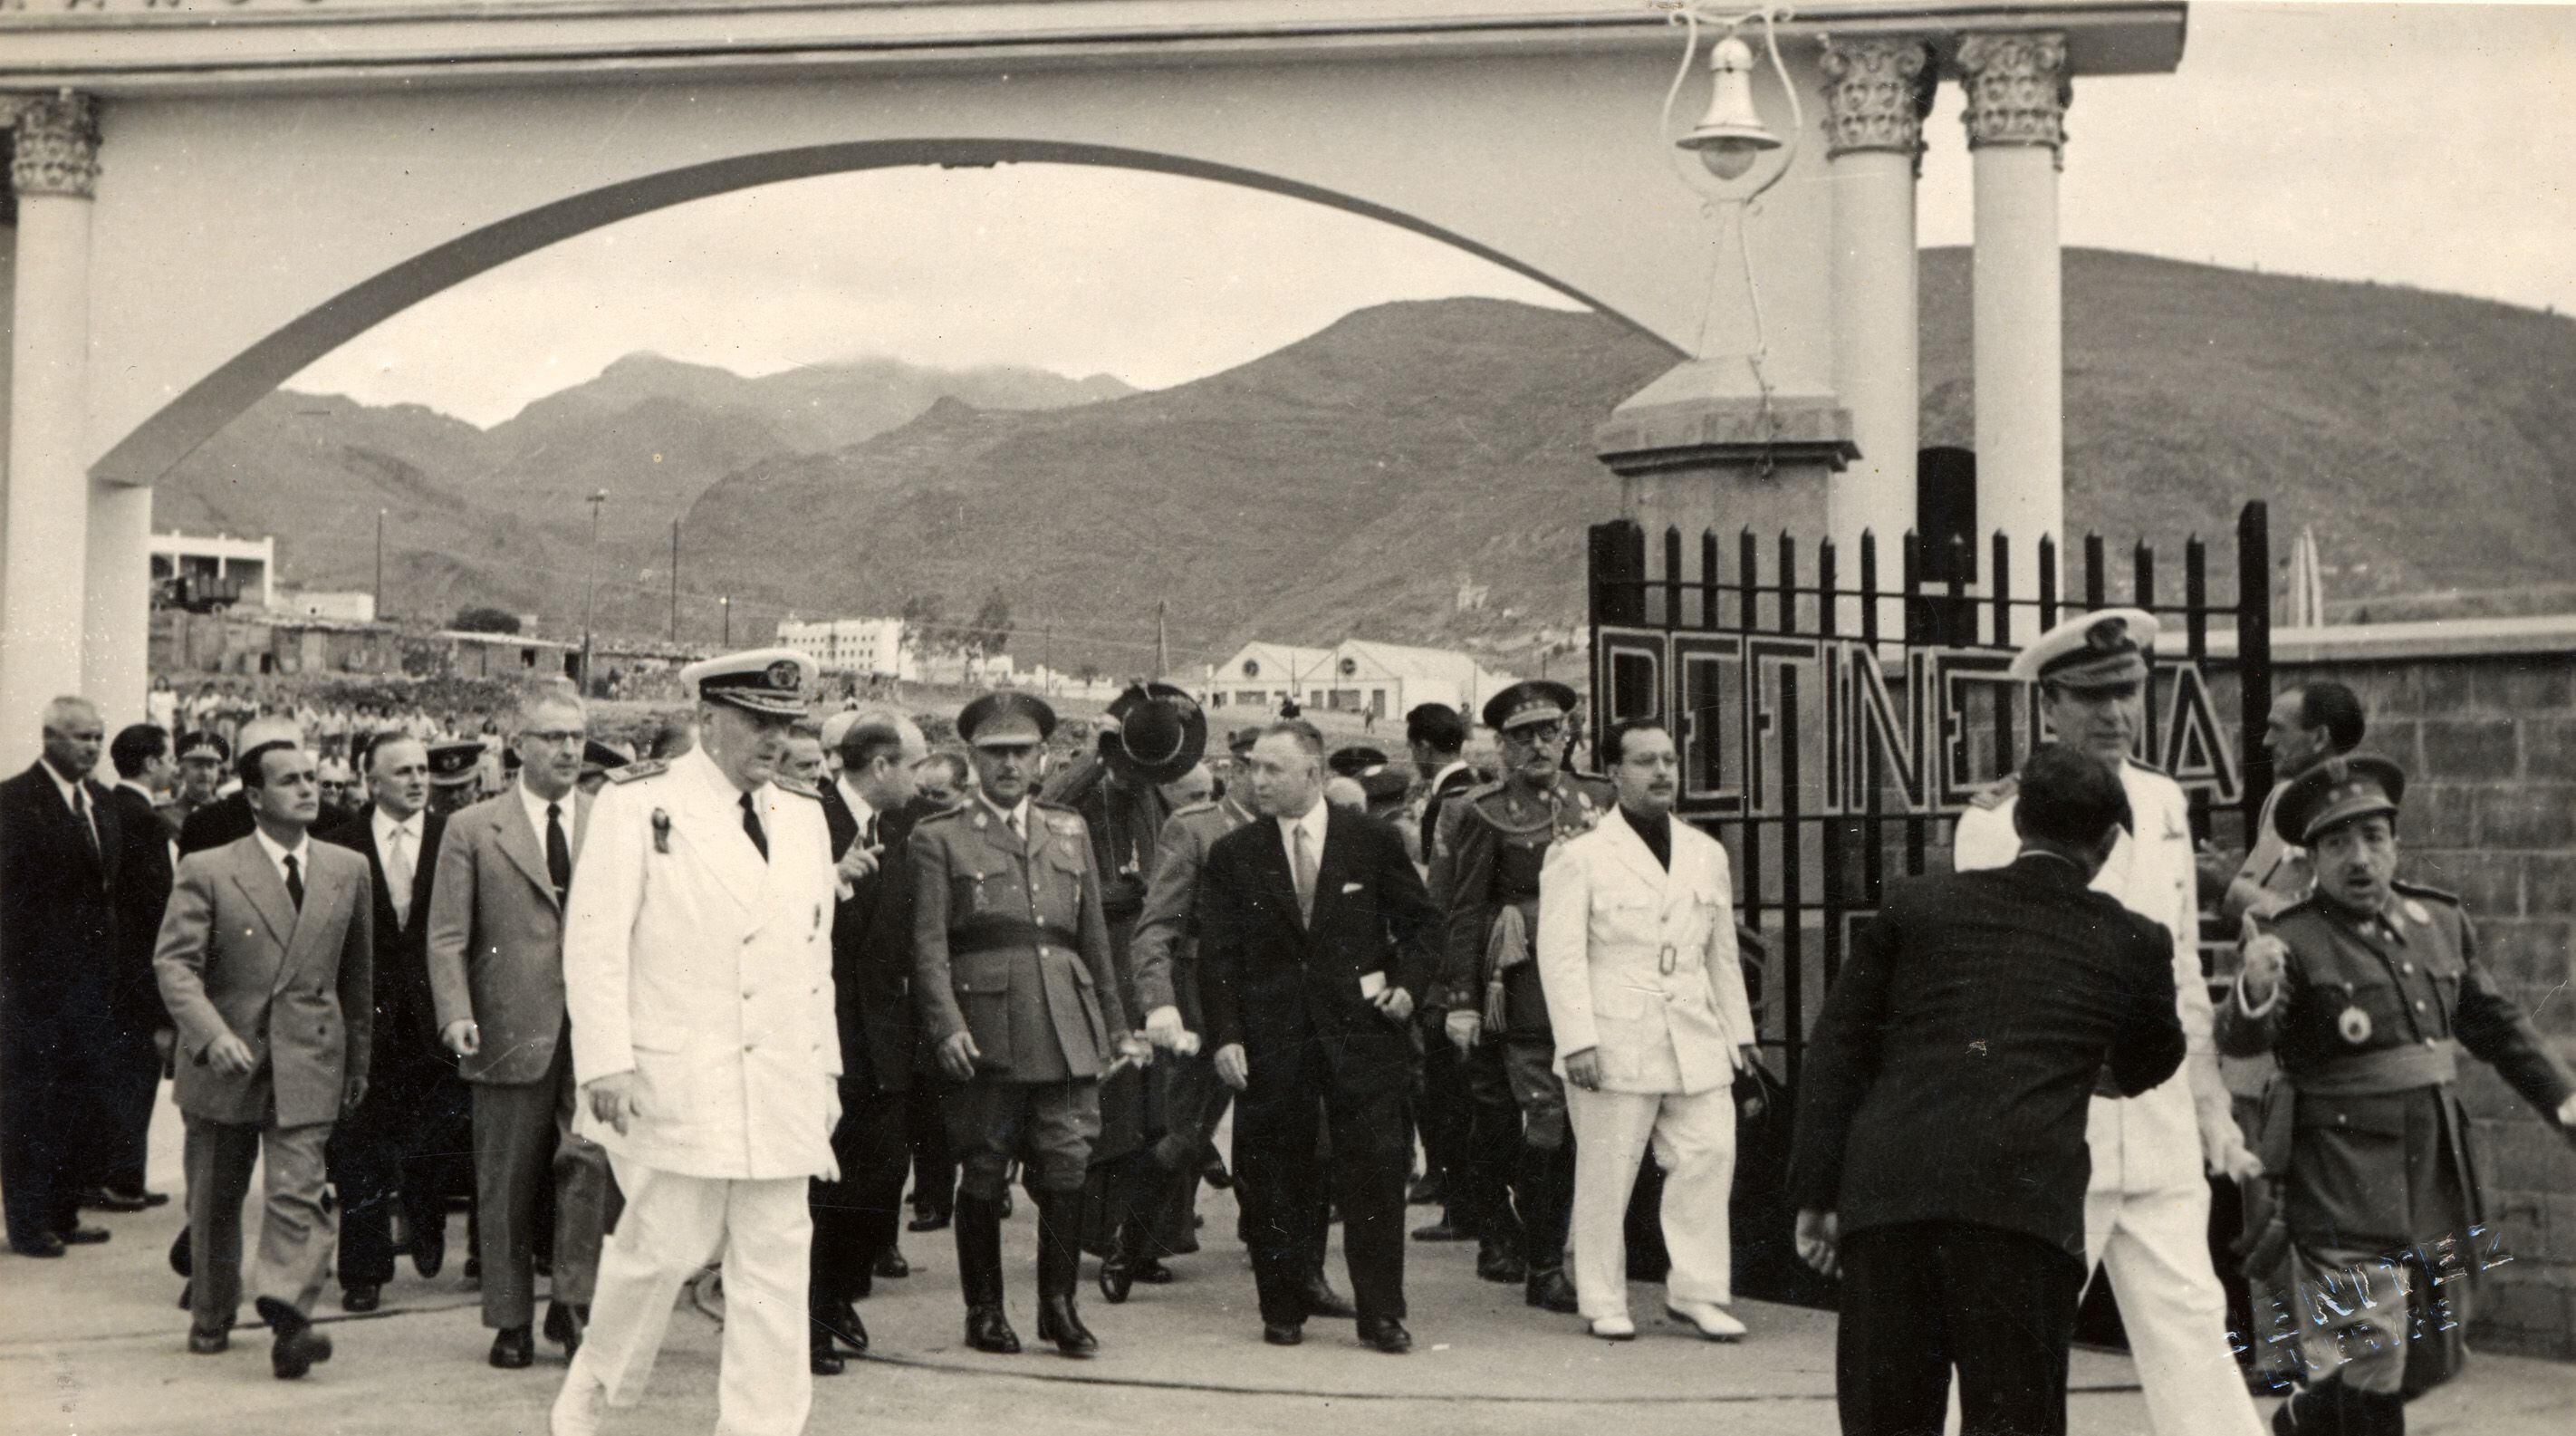 Visita de Francisco Franco a la refinería de Santa Cruz de Tenerife en 1950.